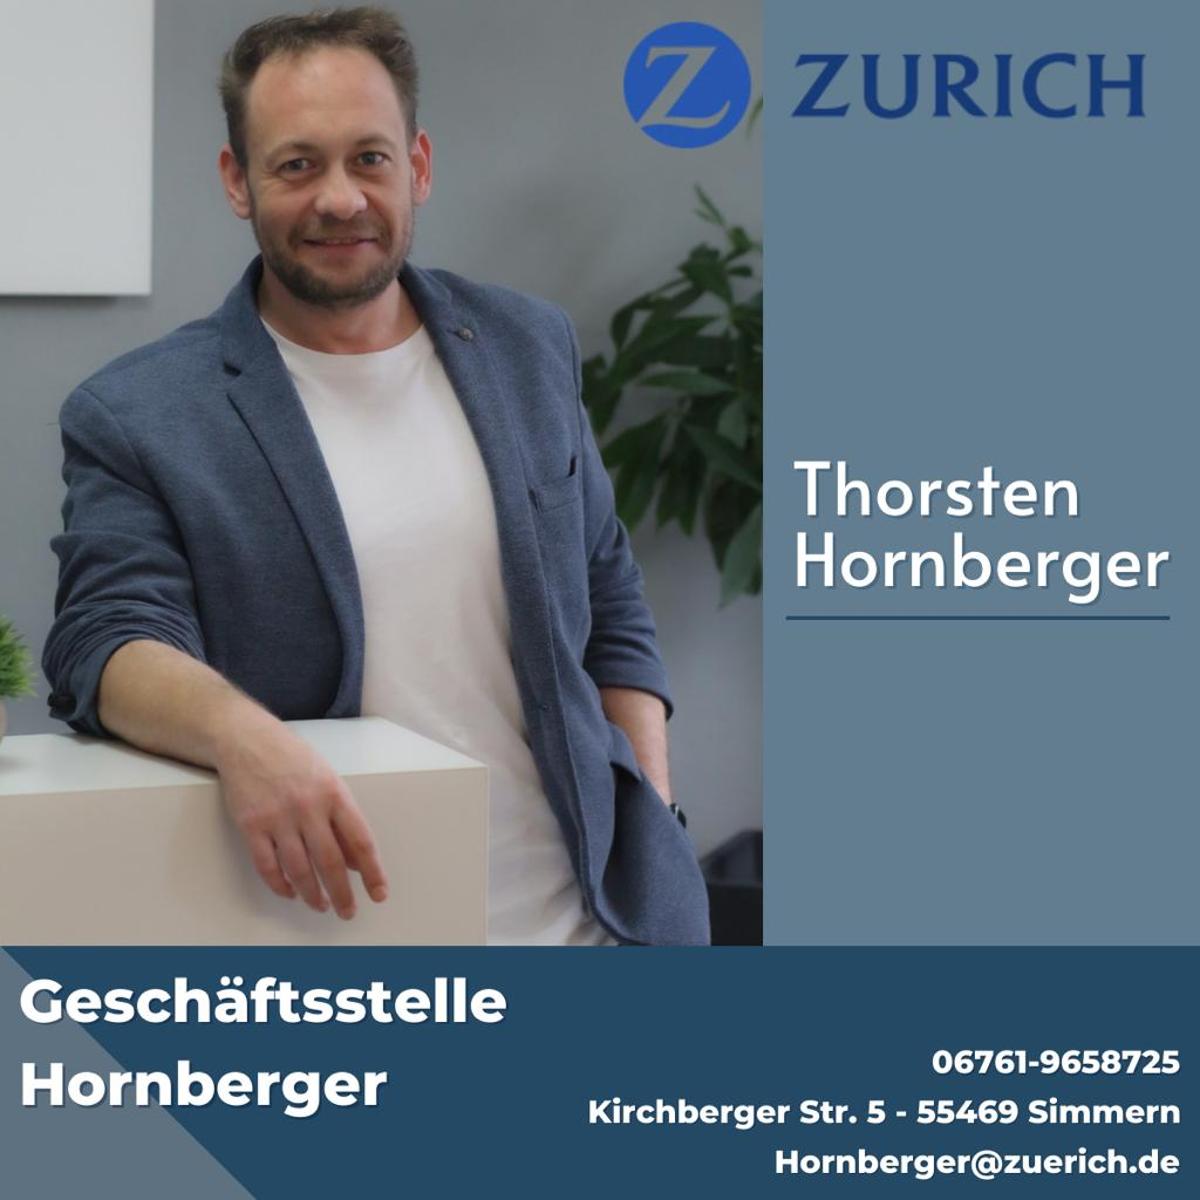 Bild 2 Zurich Geschäftsstelle Thorsten Hornberger in Simmern